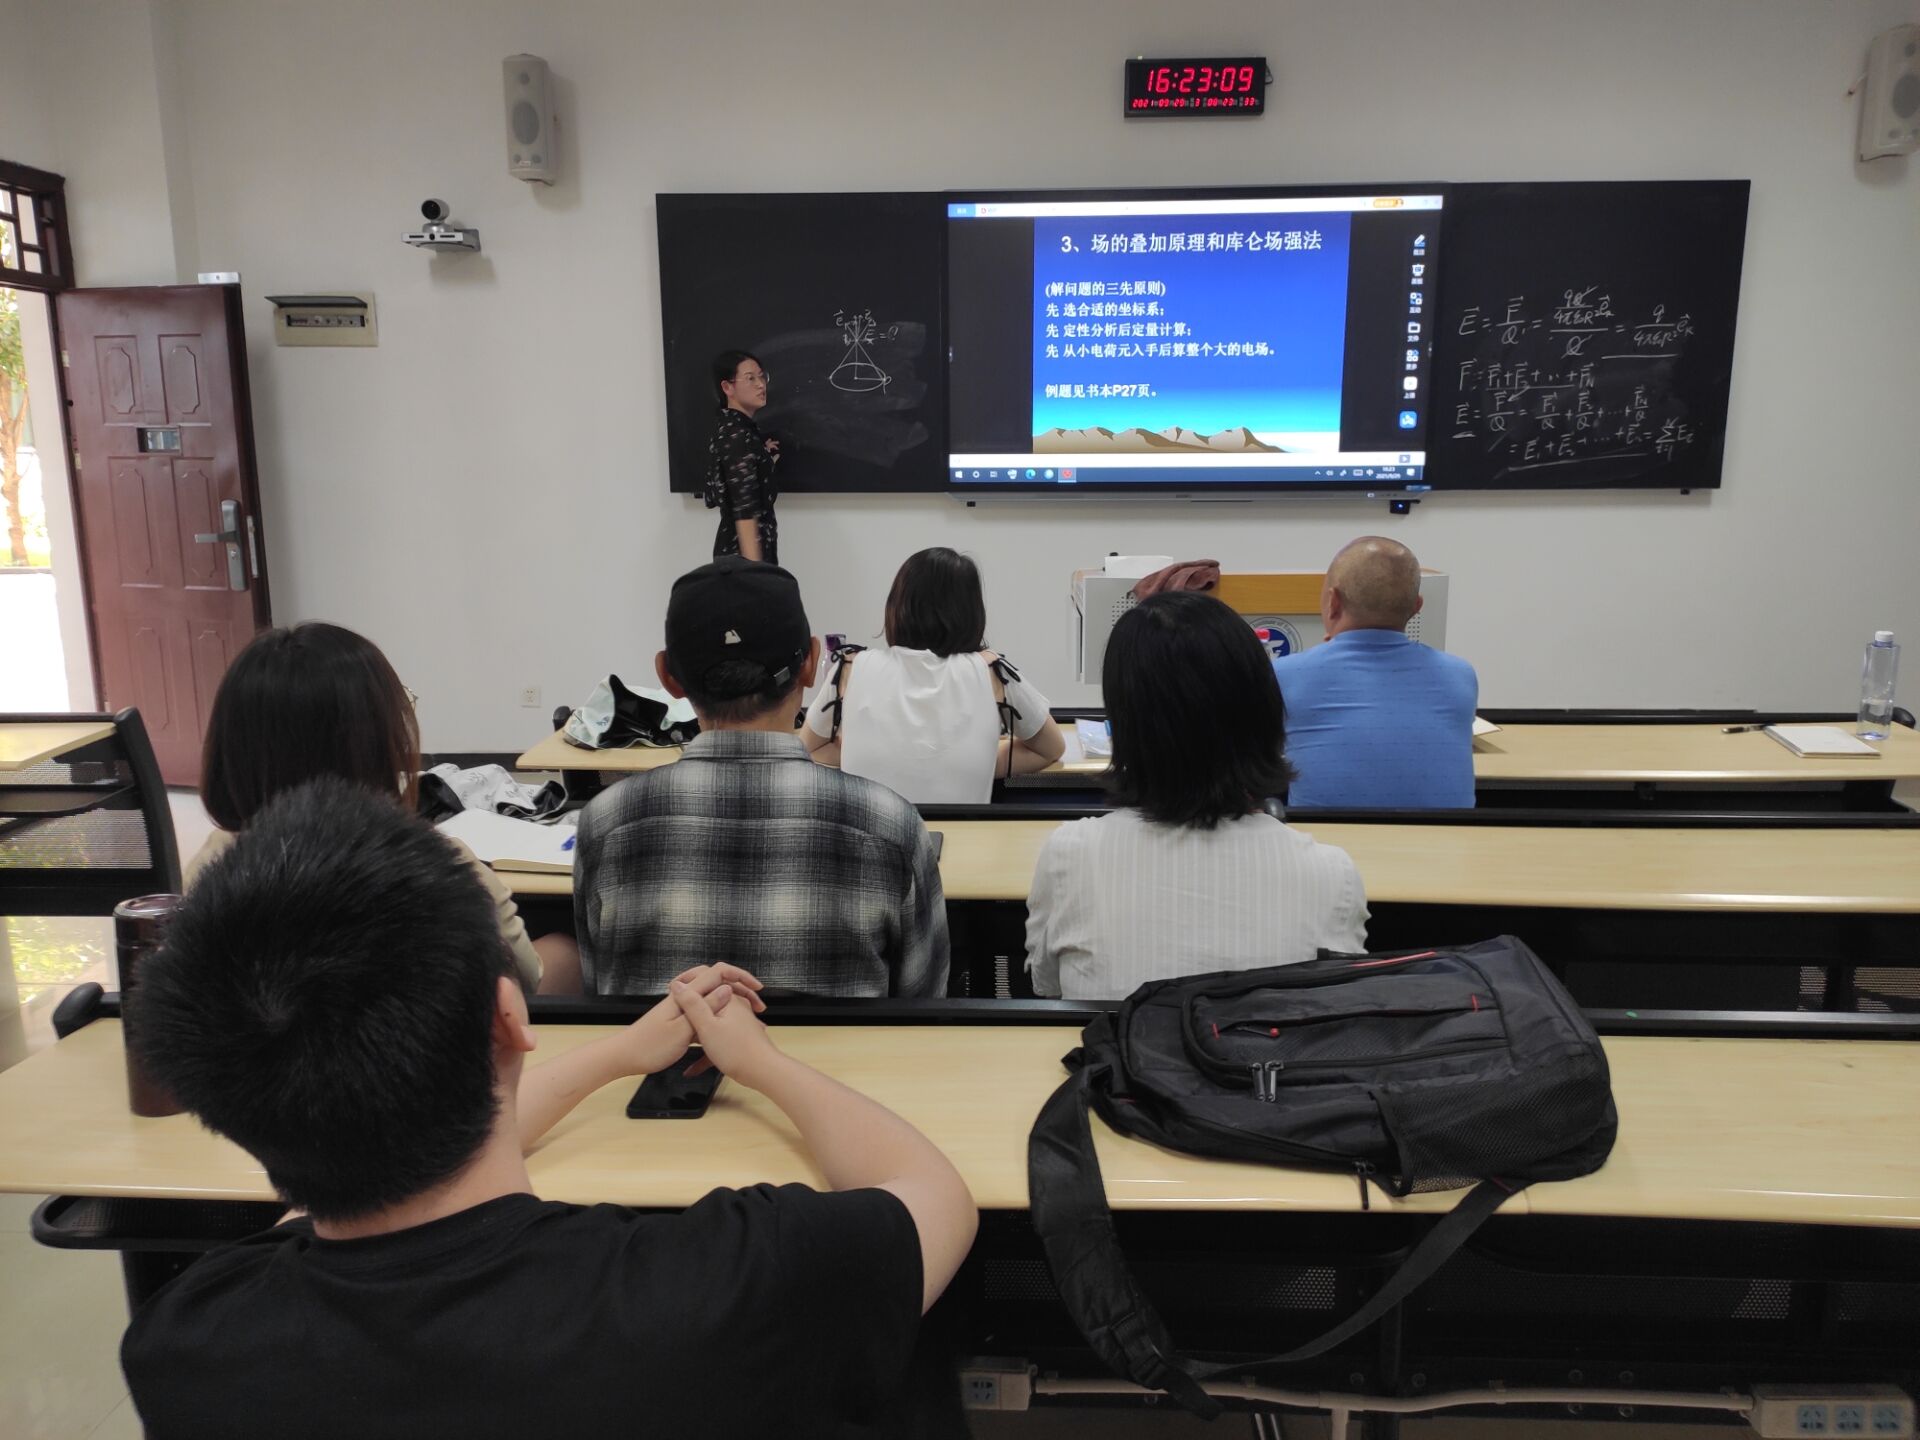 本次课堂由郑庭丽老师讲授《电磁场与电磁波》课程,该课程理论性强